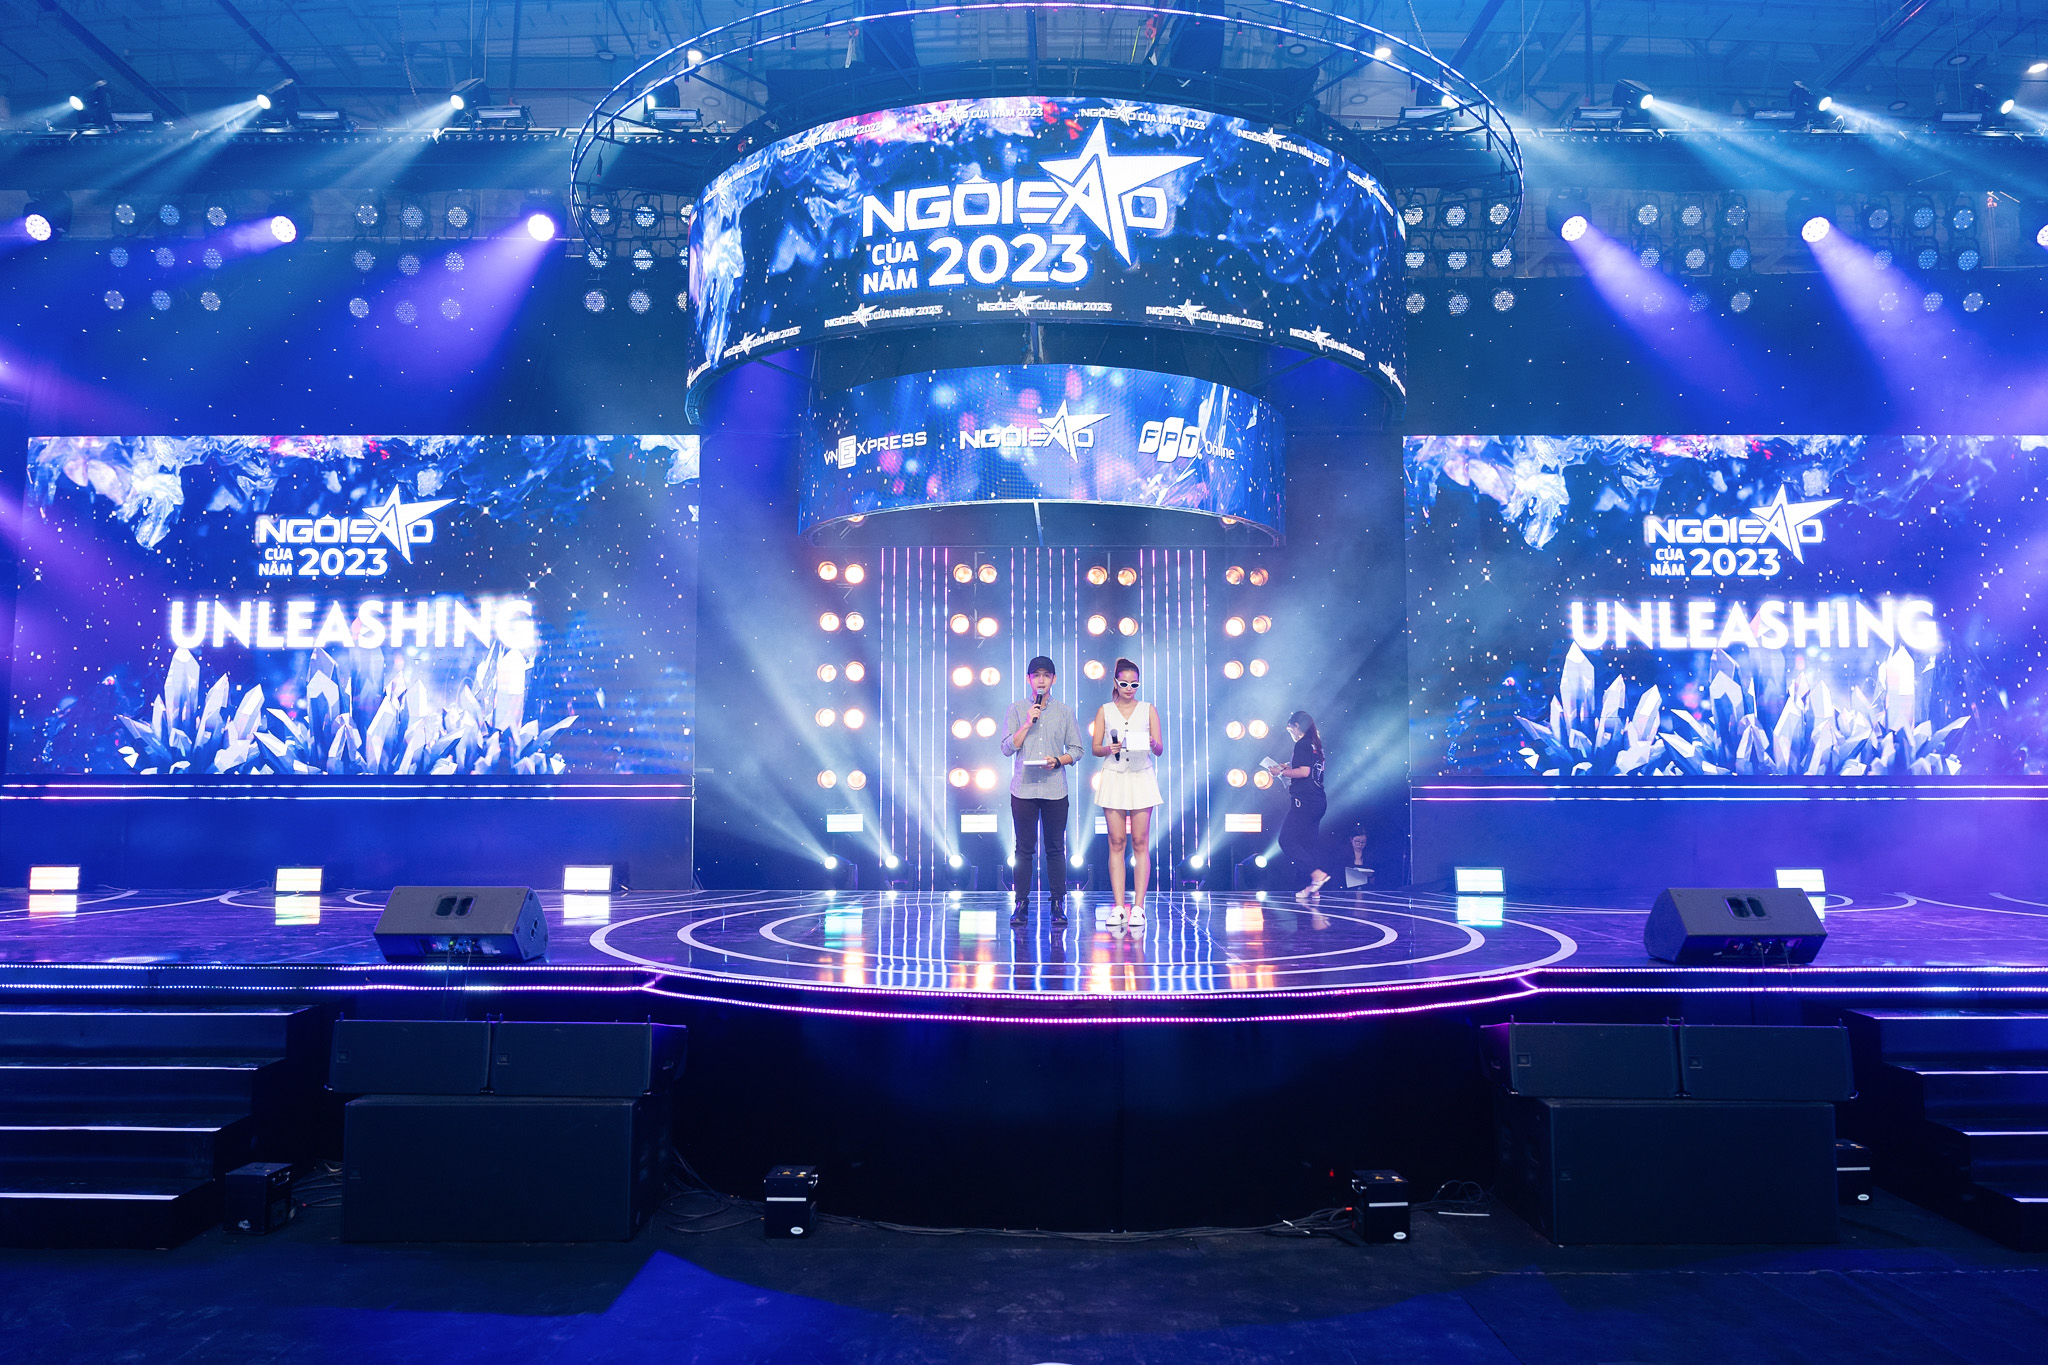 Sân khấu gala được đầu tư về quy mô, dàn dựng với nhiều đèn, màn hình.